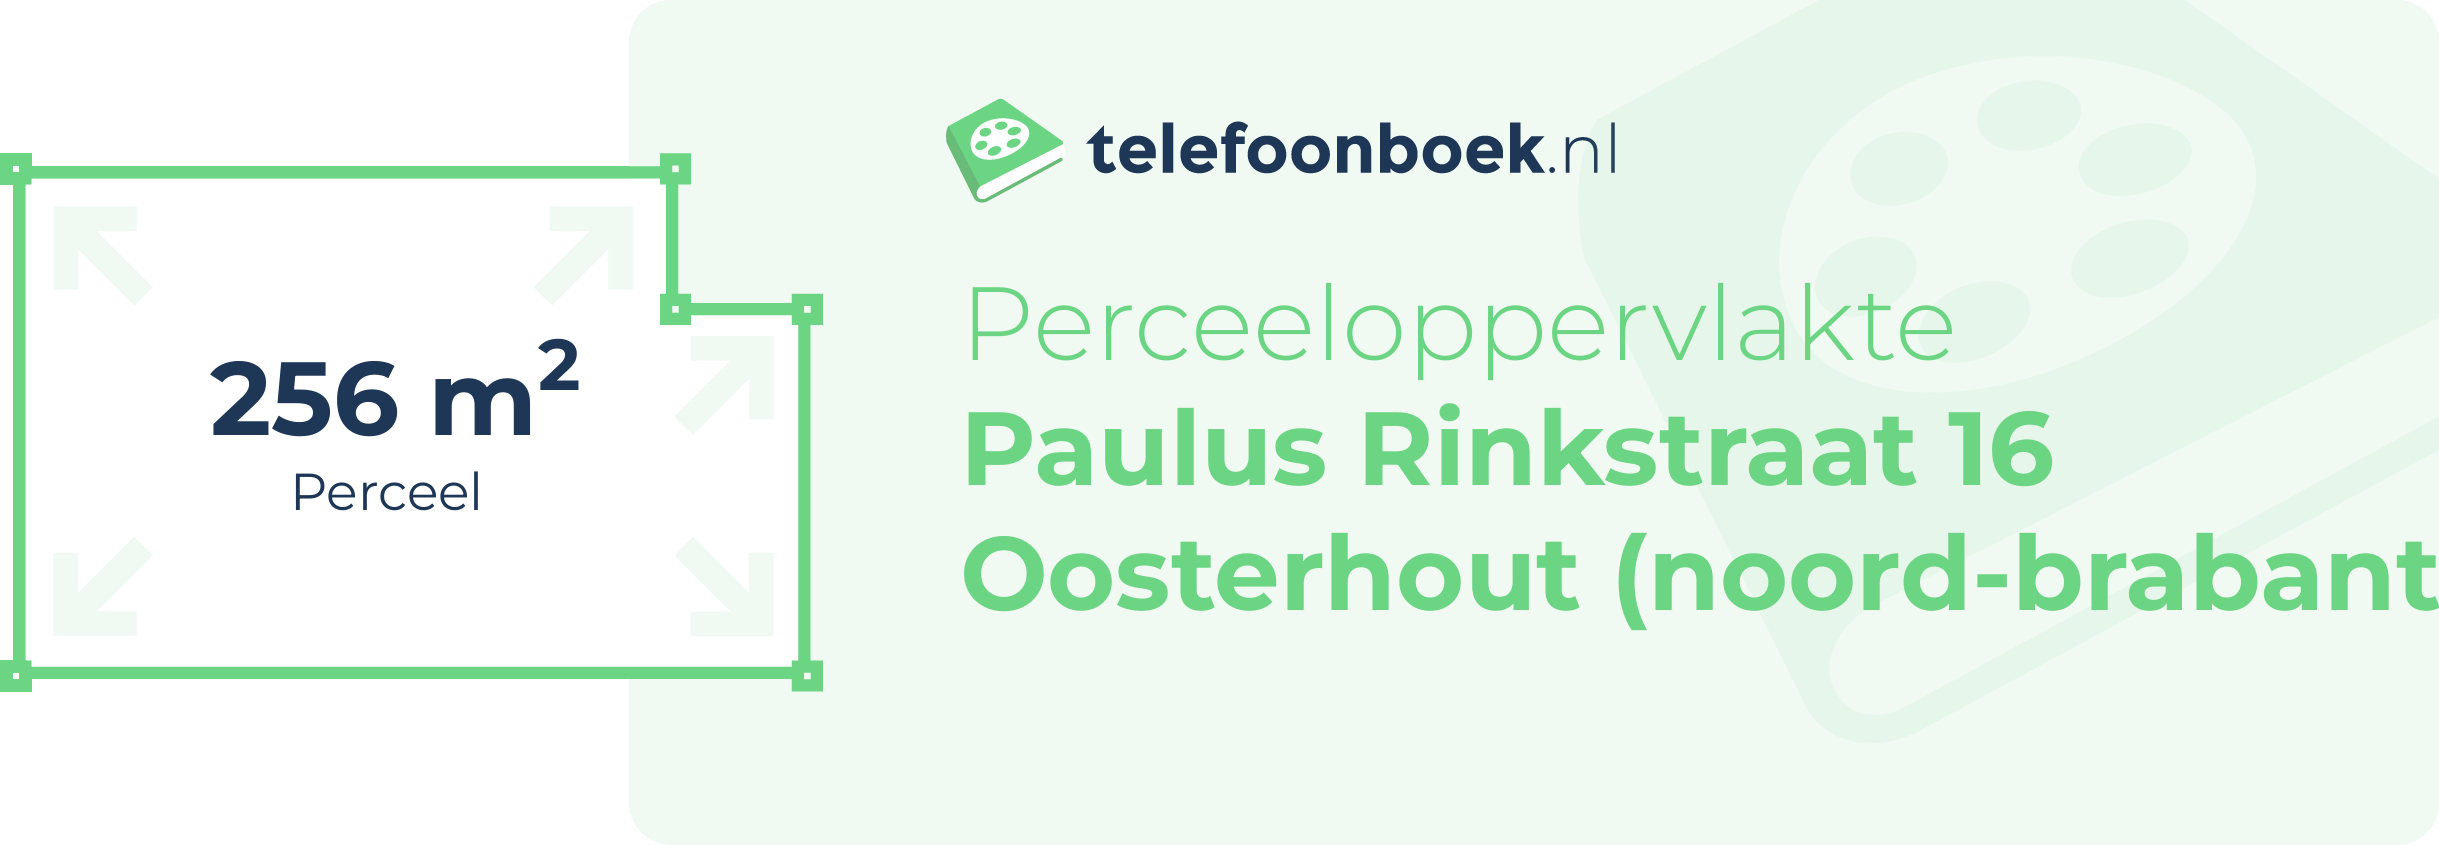 Perceeloppervlakte Paulus Rinkstraat 16 Oosterhout (Noord-Brabant)